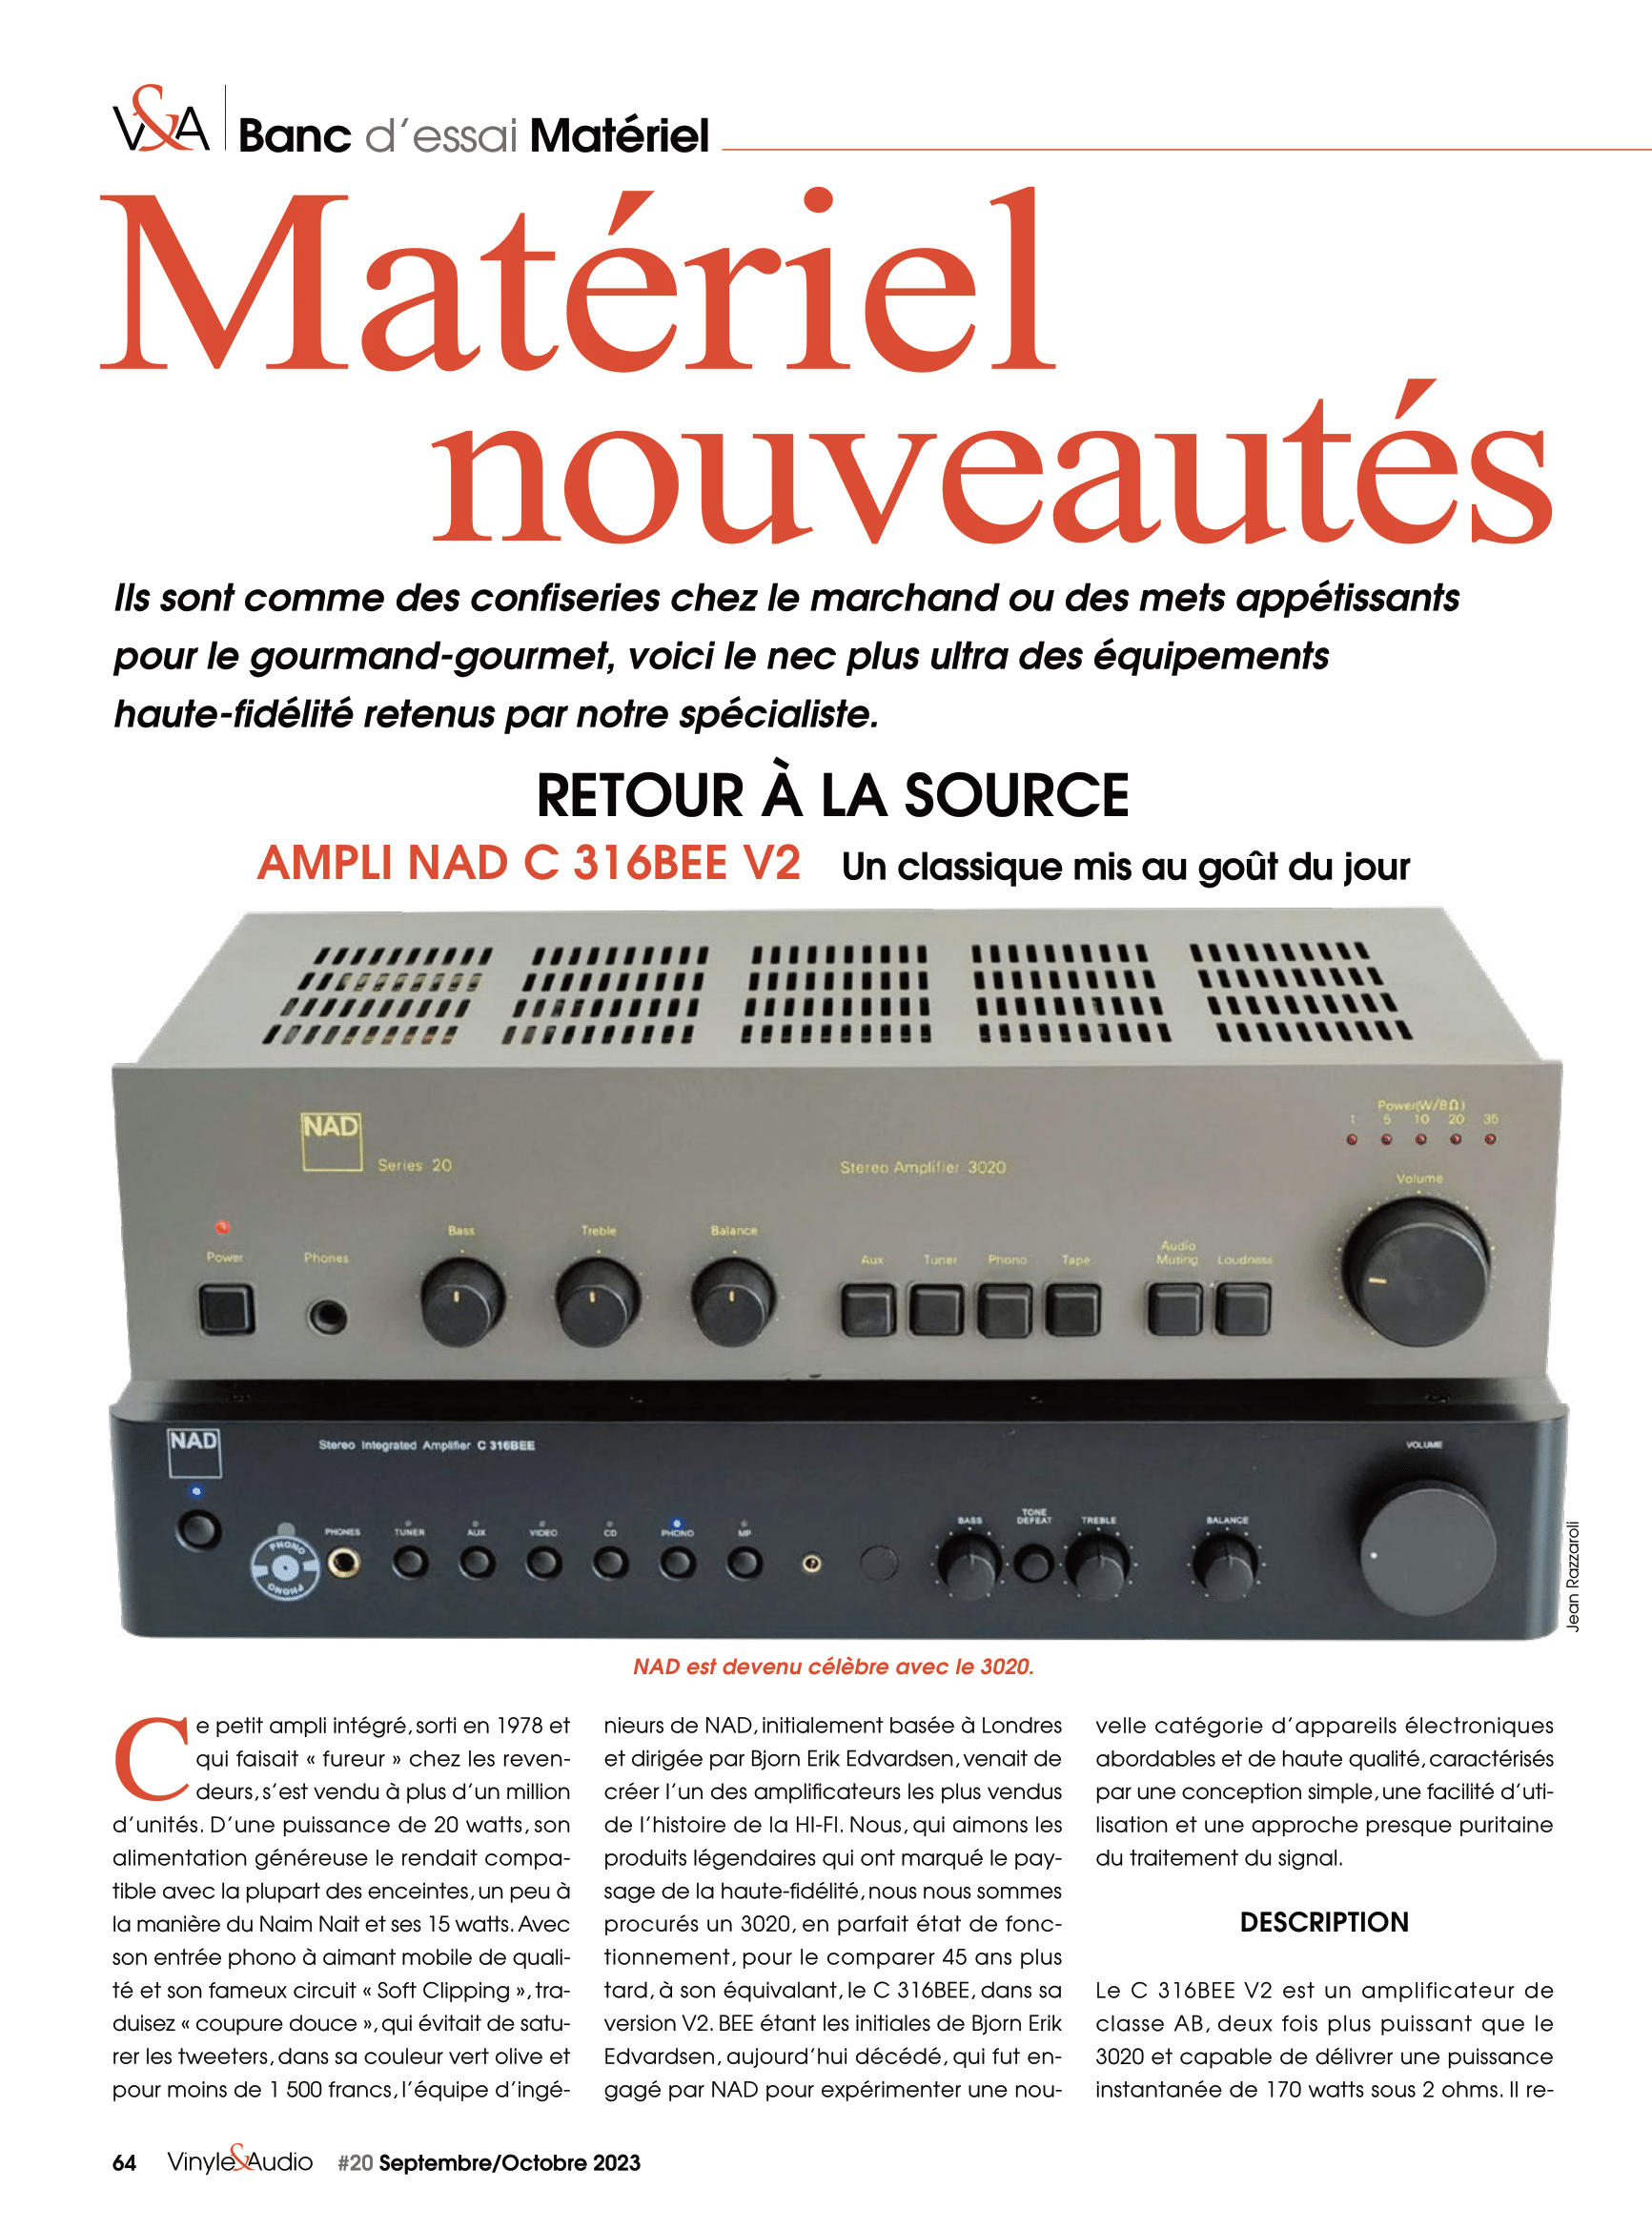 Vinyle & Audio n°20 : banc d’essai matériel et nouveautés avec la l'ampli NAD C 316BEE V2